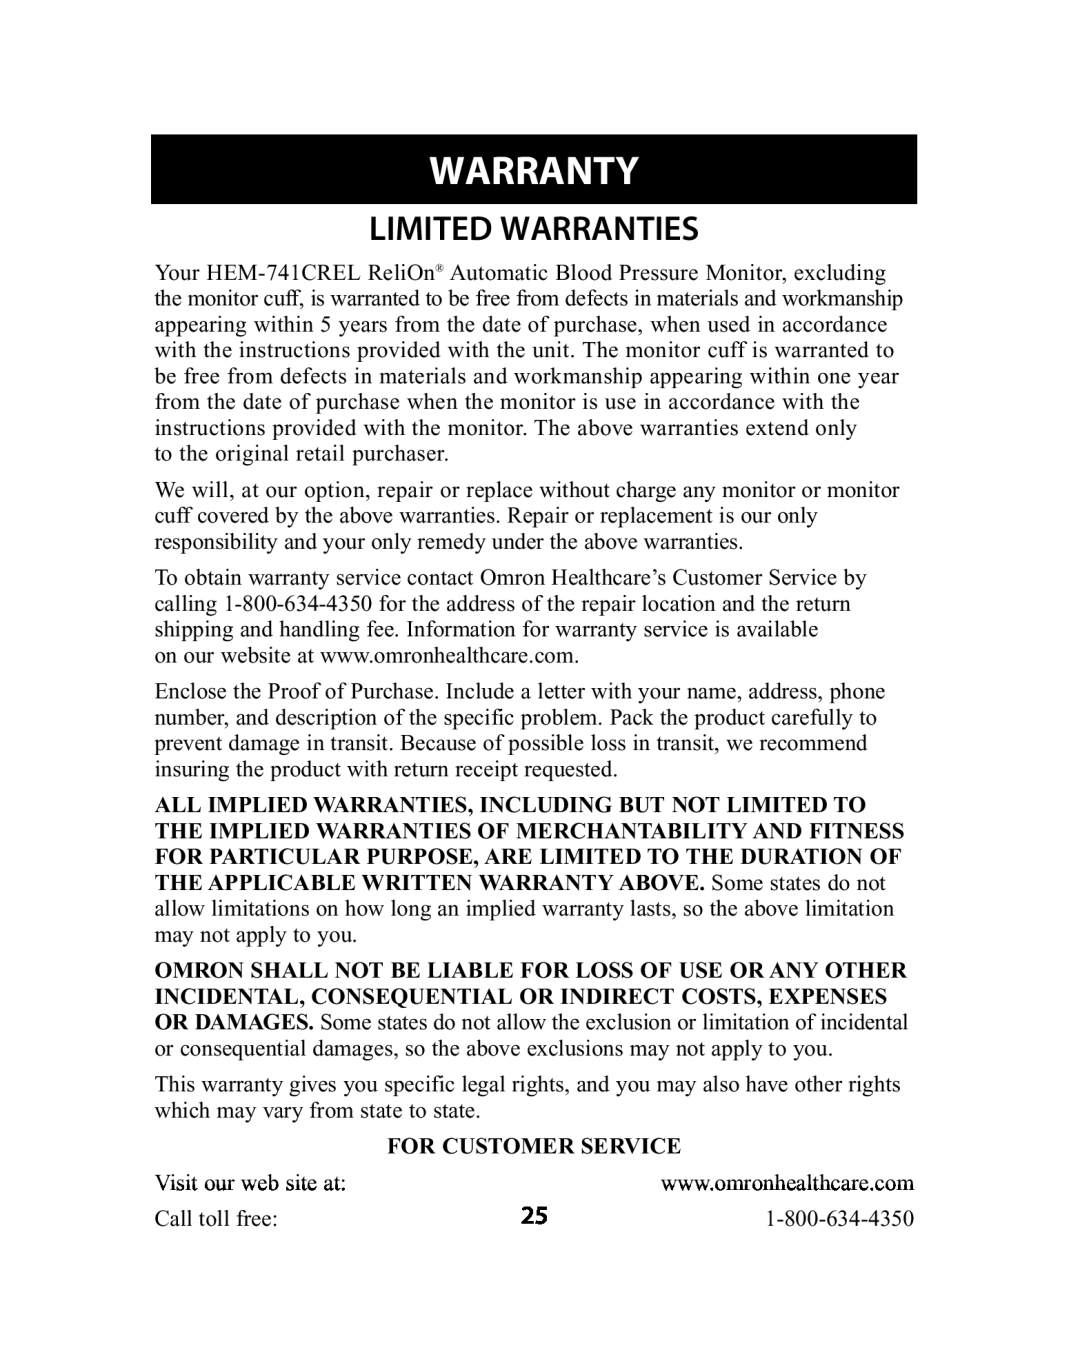 Omron Healthcare HEM-741CREL manual Warranty, Limited Warranties 